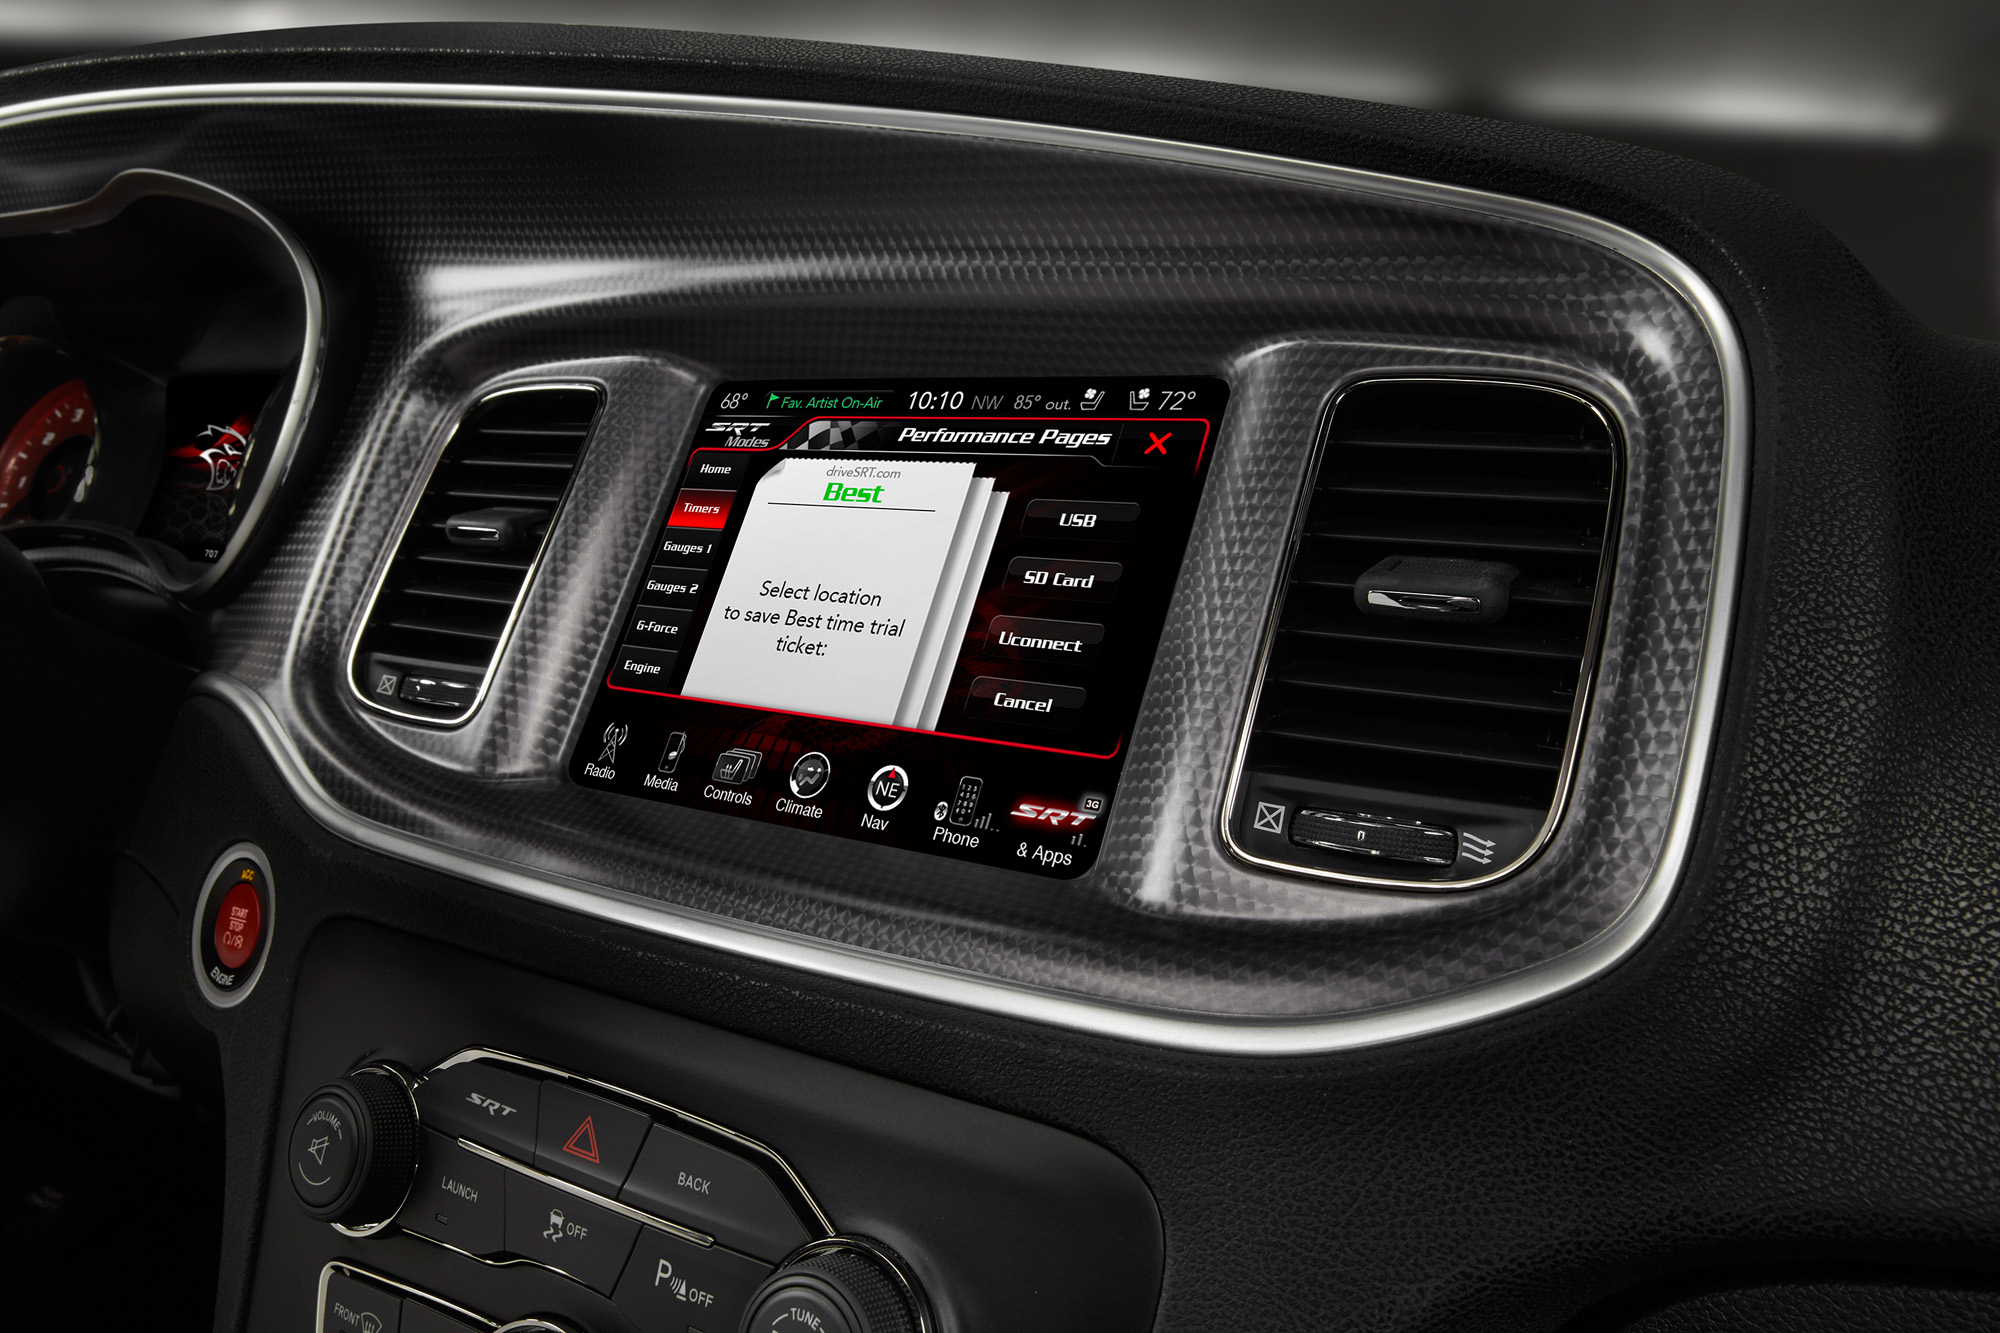 2015 Dodge Charger SRT - Timer screen